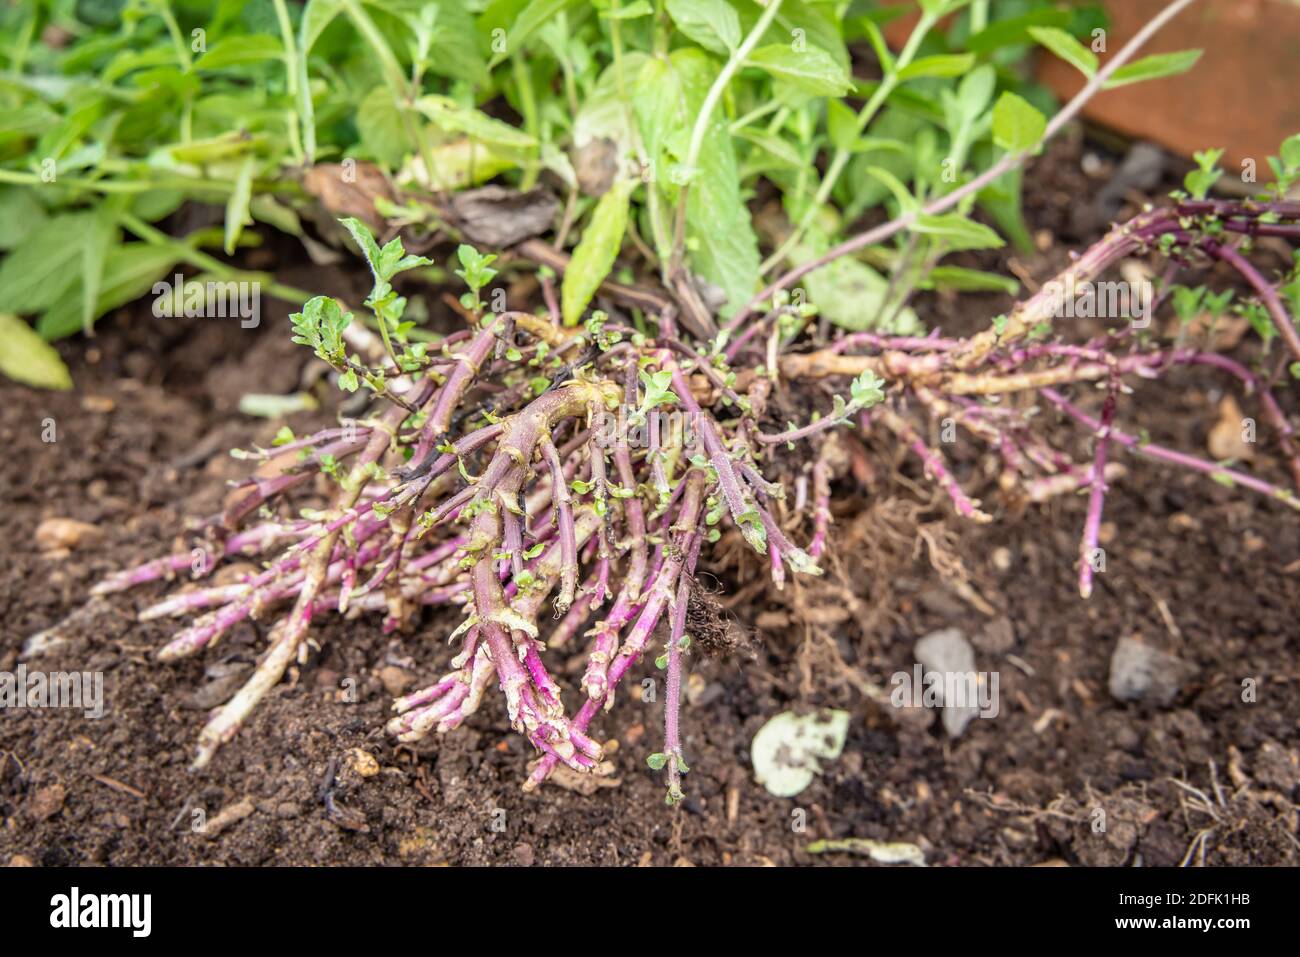 Rhizome, Minzpflanze (mentha) mit Blättern und Rhizomen oder Wurzeln, die  im Garten wachsen, UK Stockfotografie - Alamy